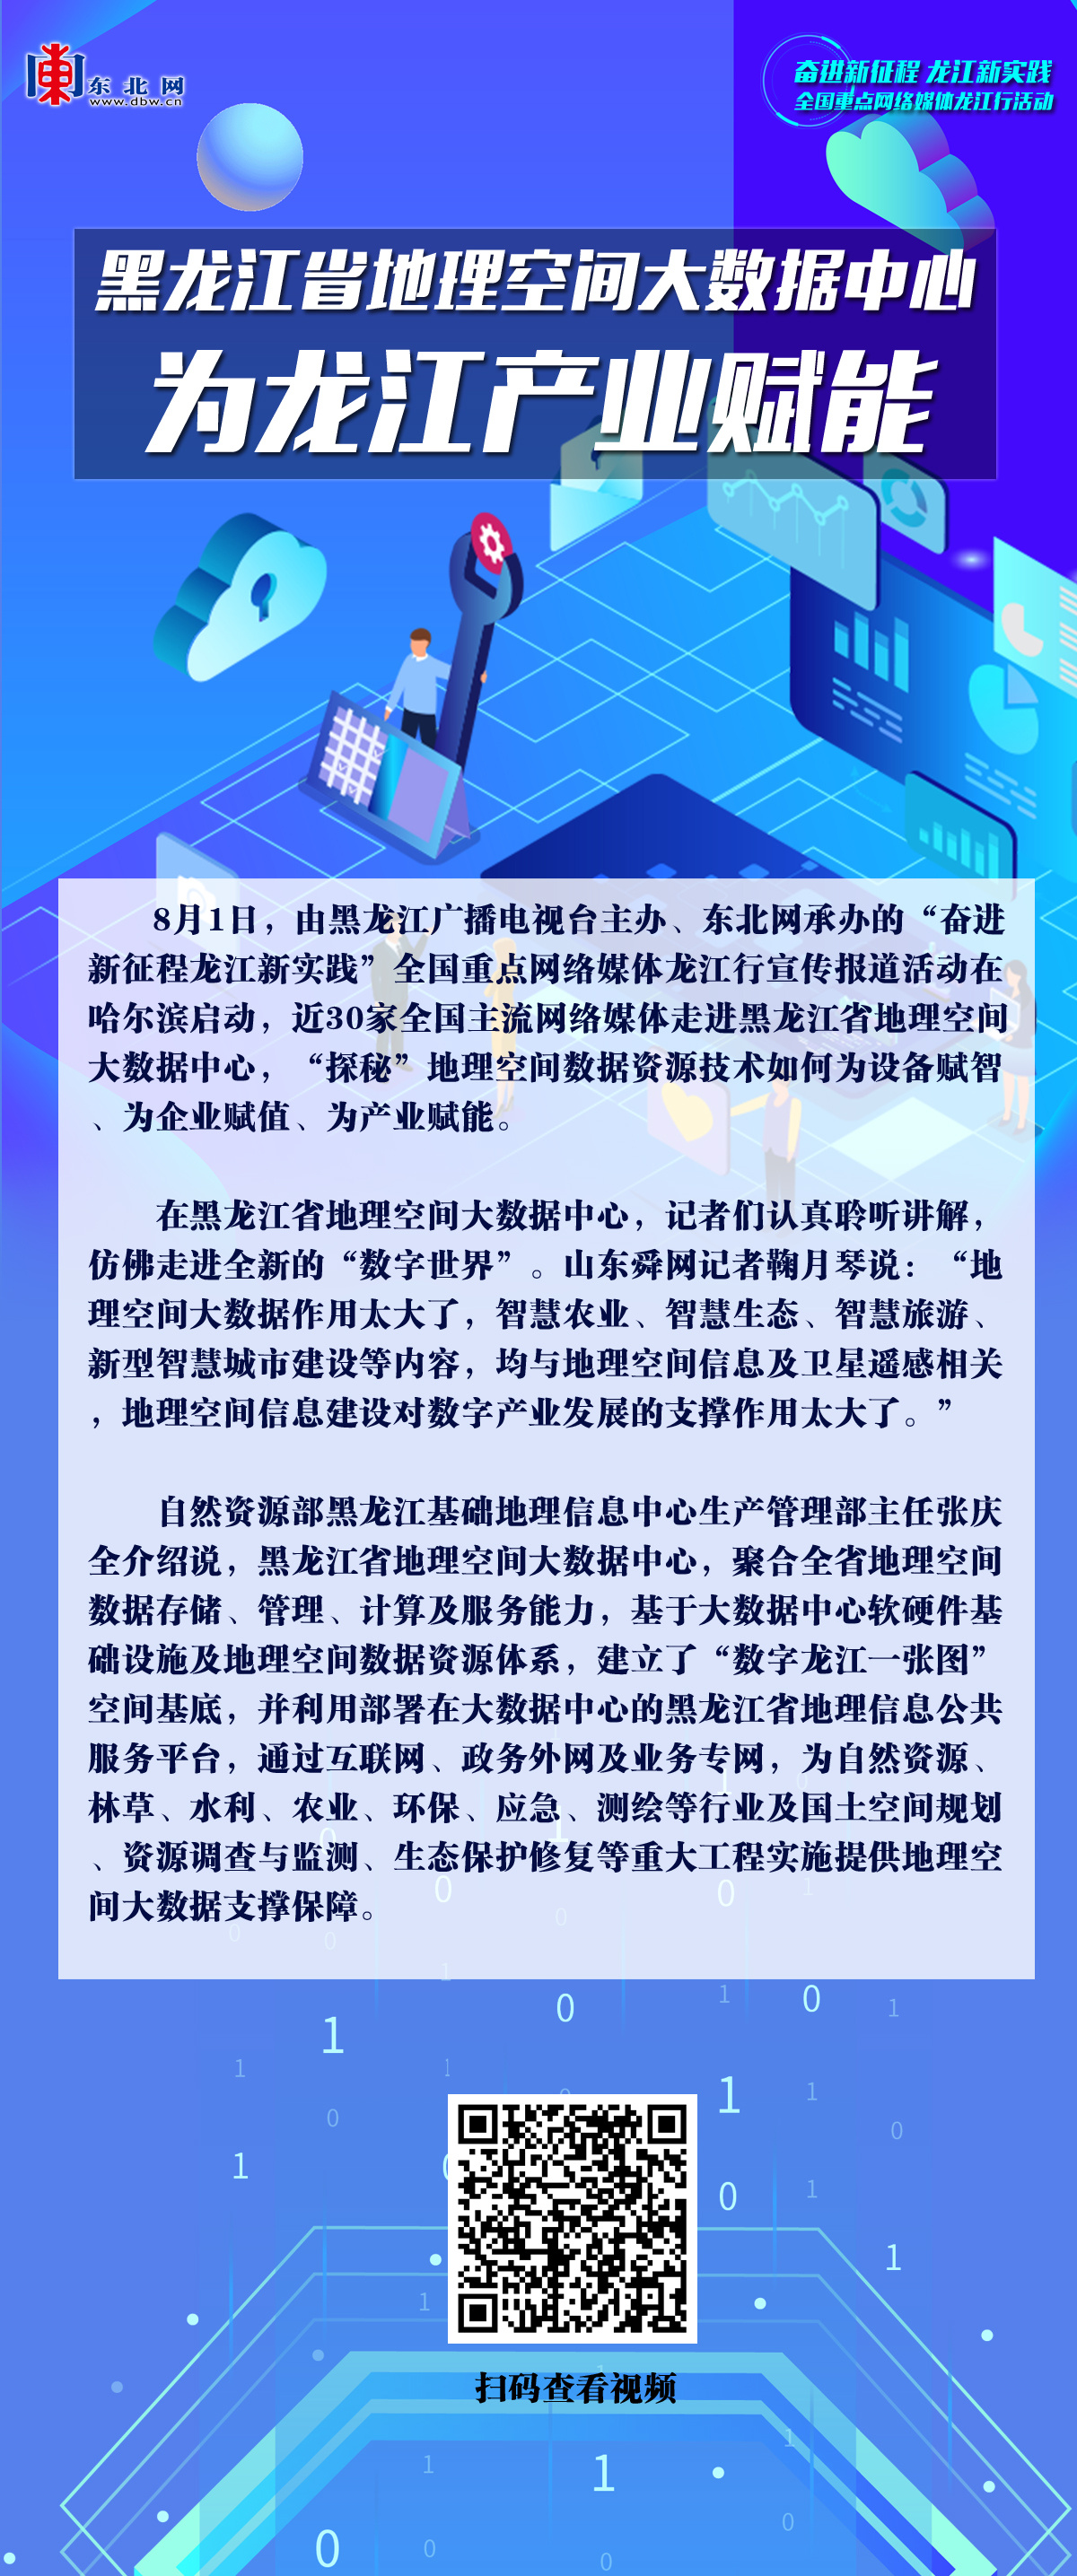 【海报】黑龙江省地理空间大数据中心为龙江产业赋能